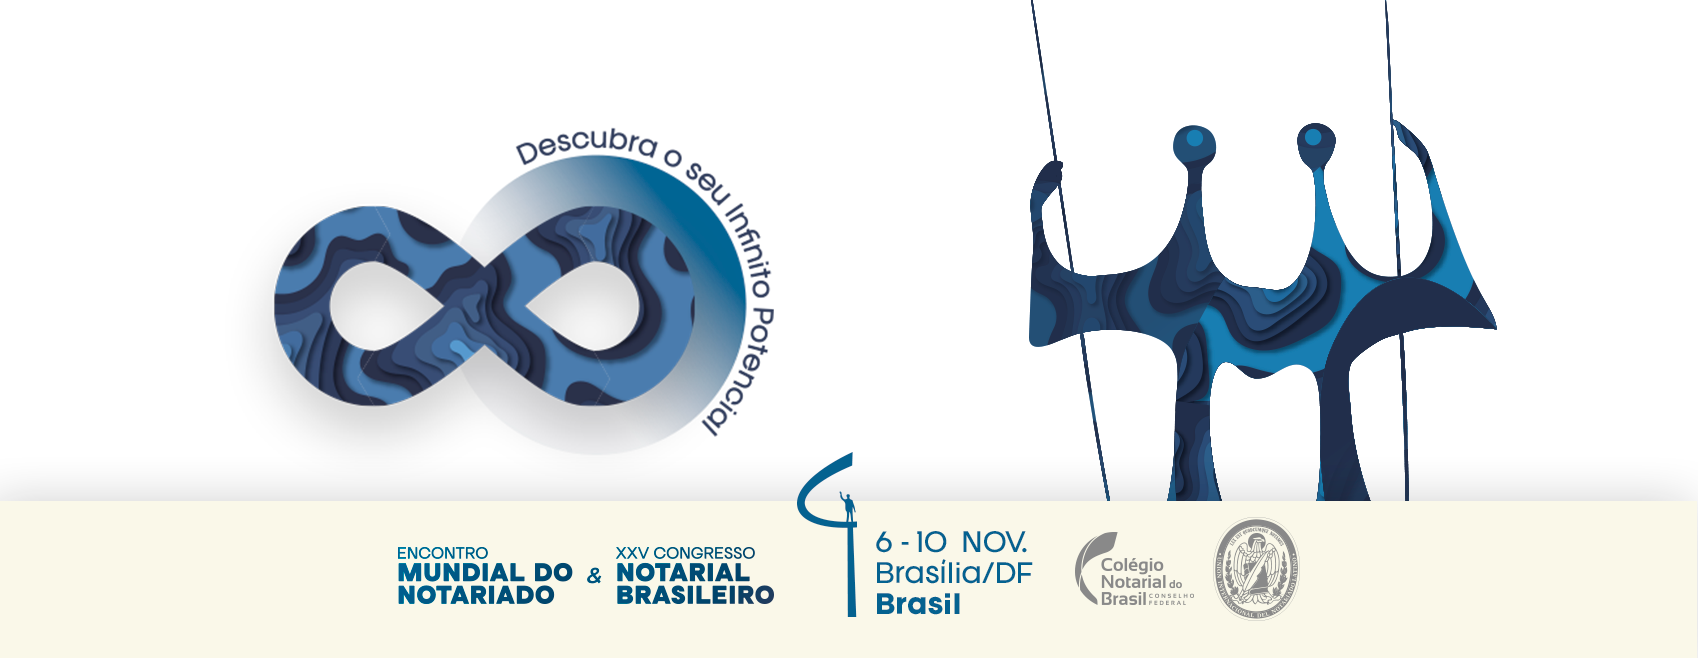 Notariado Mundial Vem Ao Brasil Para Debater A Atividade Nos 91 Países Membros